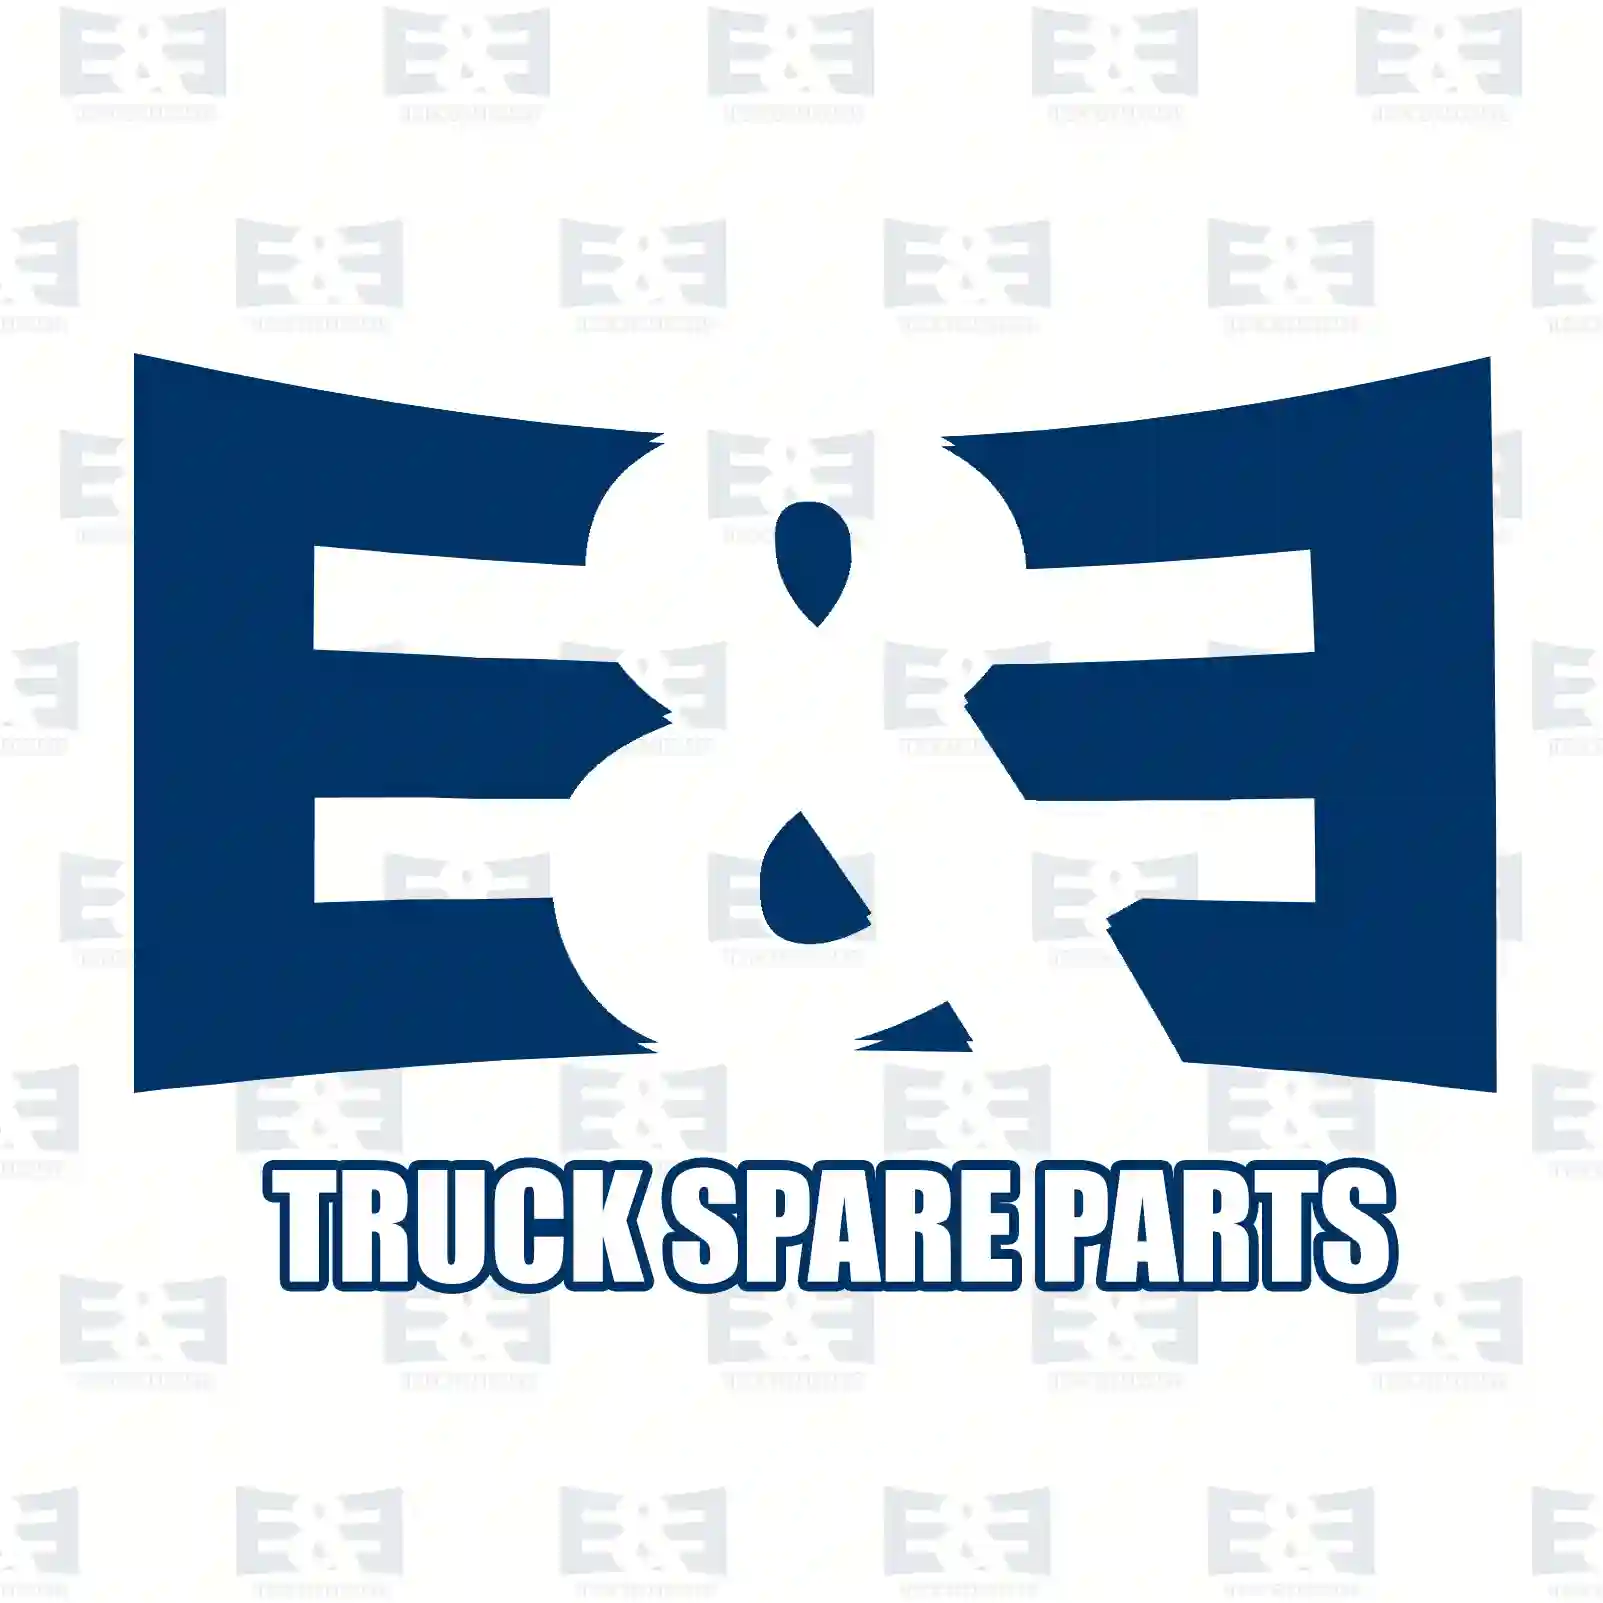 Diode group, 2E2290599, 81259270076, 8125 ||  2E2290599 E&E Truck Spare Parts | Truck Spare Parts, Auotomotive Spare Parts Diode group, 2E2290599, 81259270076, 8125 ||  2E2290599 E&E Truck Spare Parts | Truck Spare Parts, Auotomotive Spare Parts